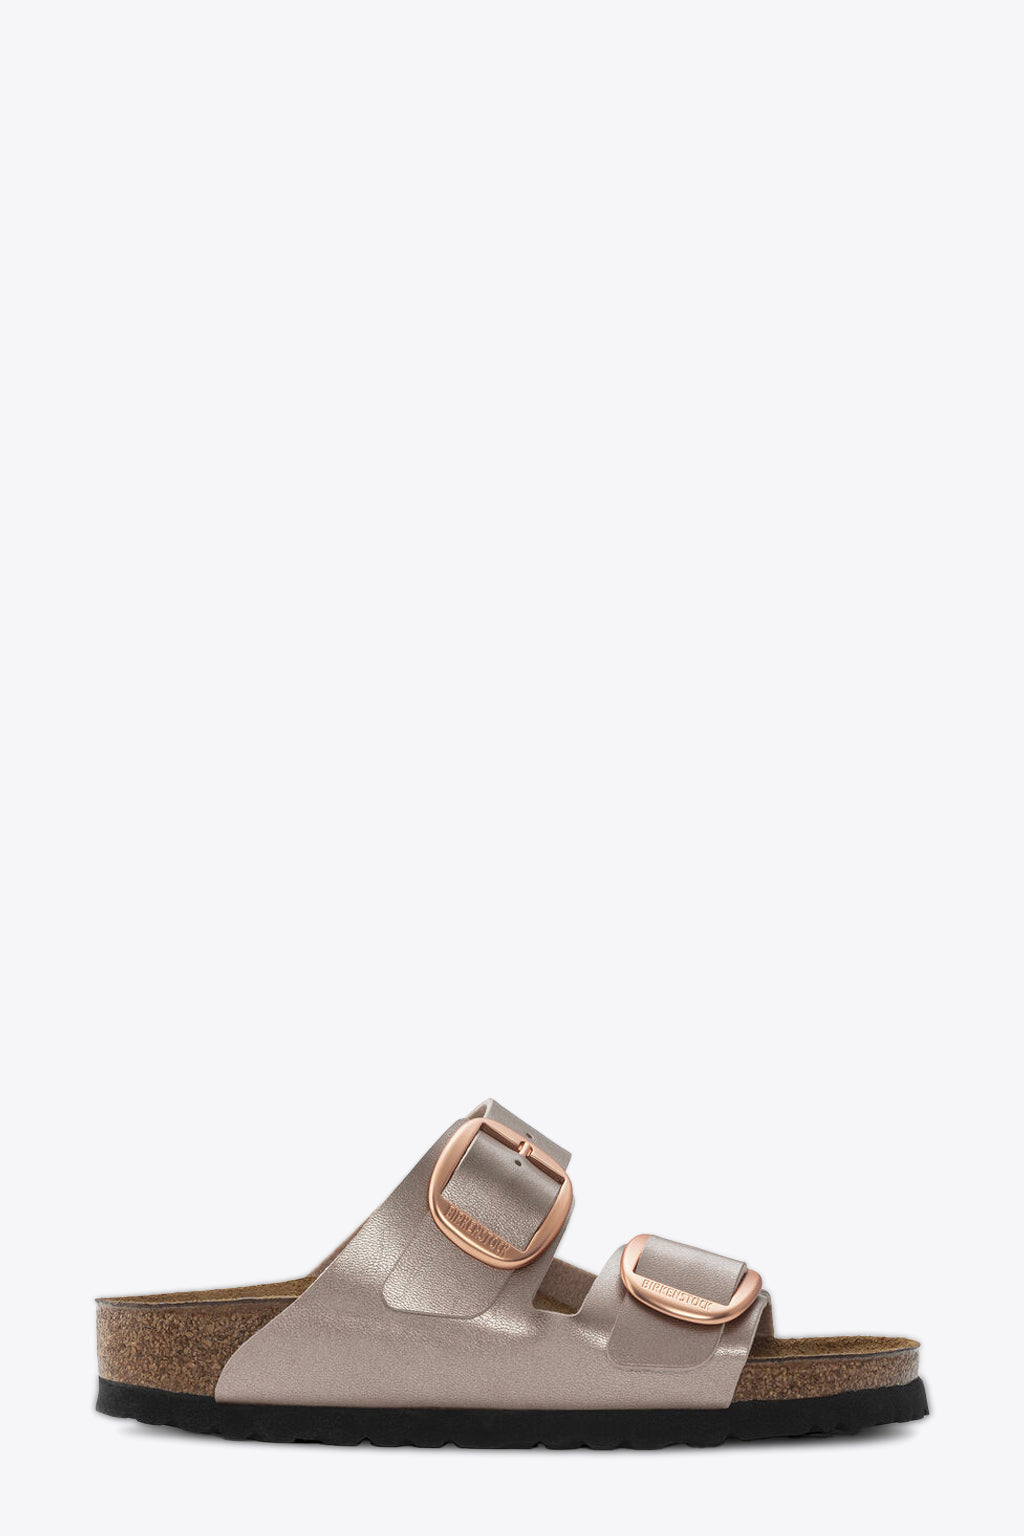 alt-image__Metallic-copper-leather-sandal---Arizona-big-buckle